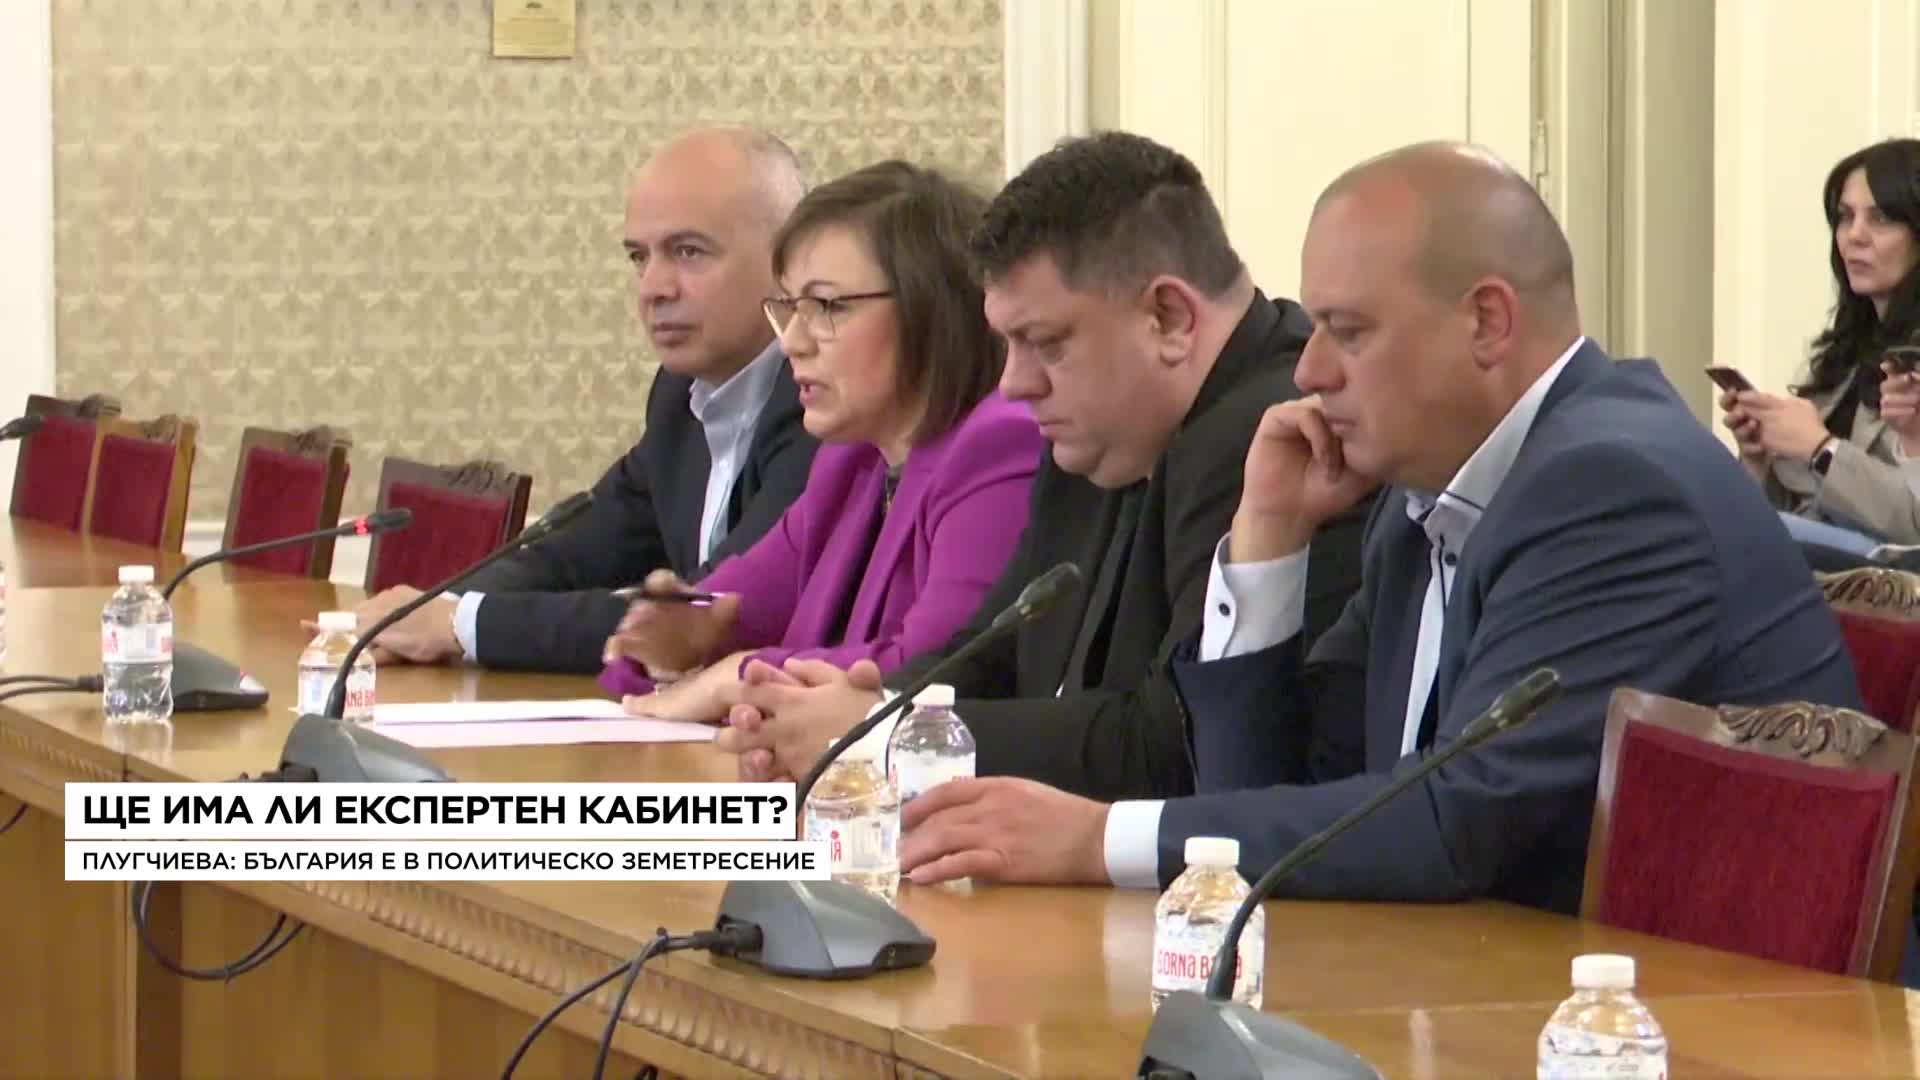 Меглена Плугчиева: Очаквам да има правителство с втория мандат